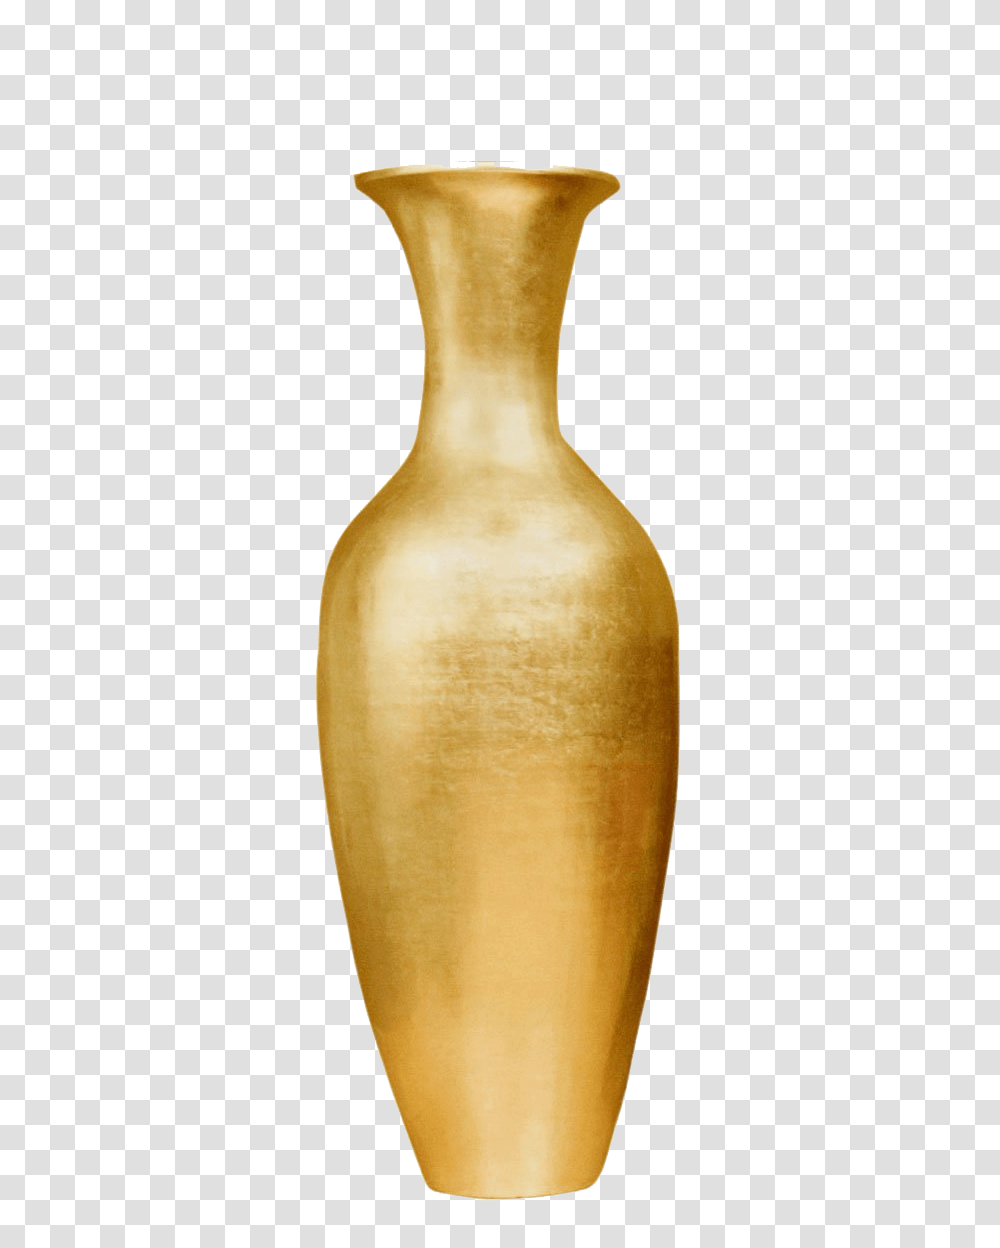 Vase Images, Jar, Pottery, Pear, Fruit Transparent Png